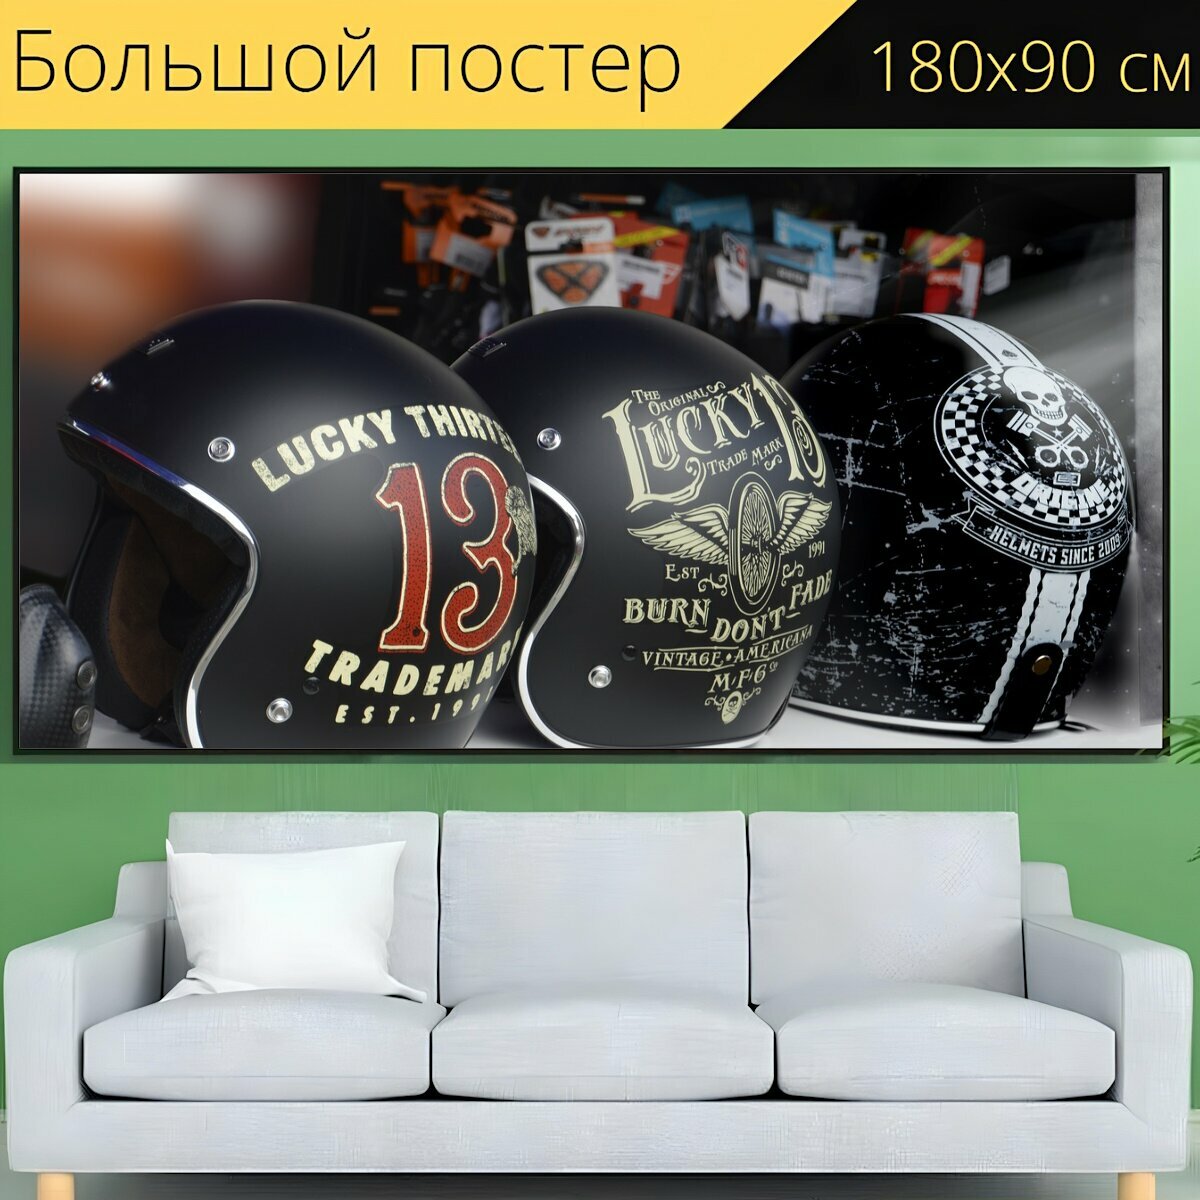 Большой постер "Оборудование, мотоцикл, шлем" 180 x 90 см. для интерьера